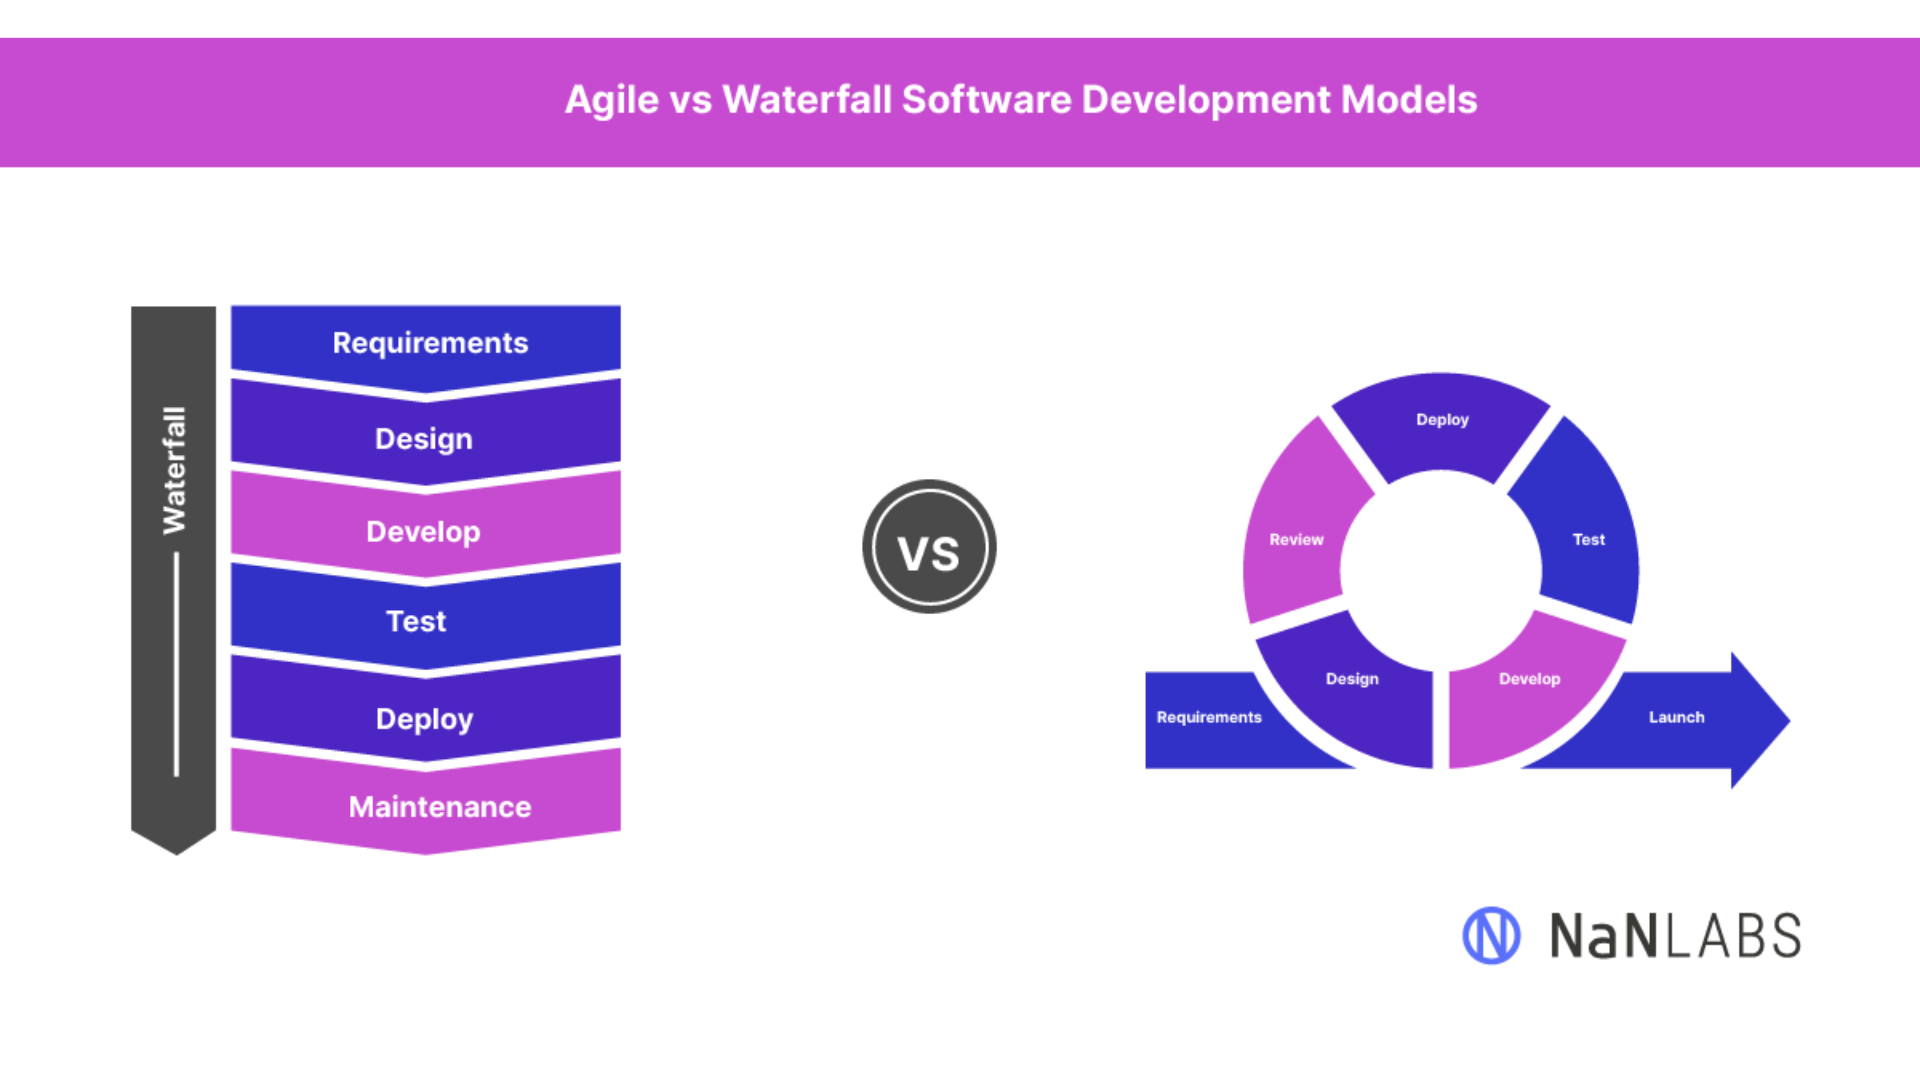 Agile vs Waterfall methodologies